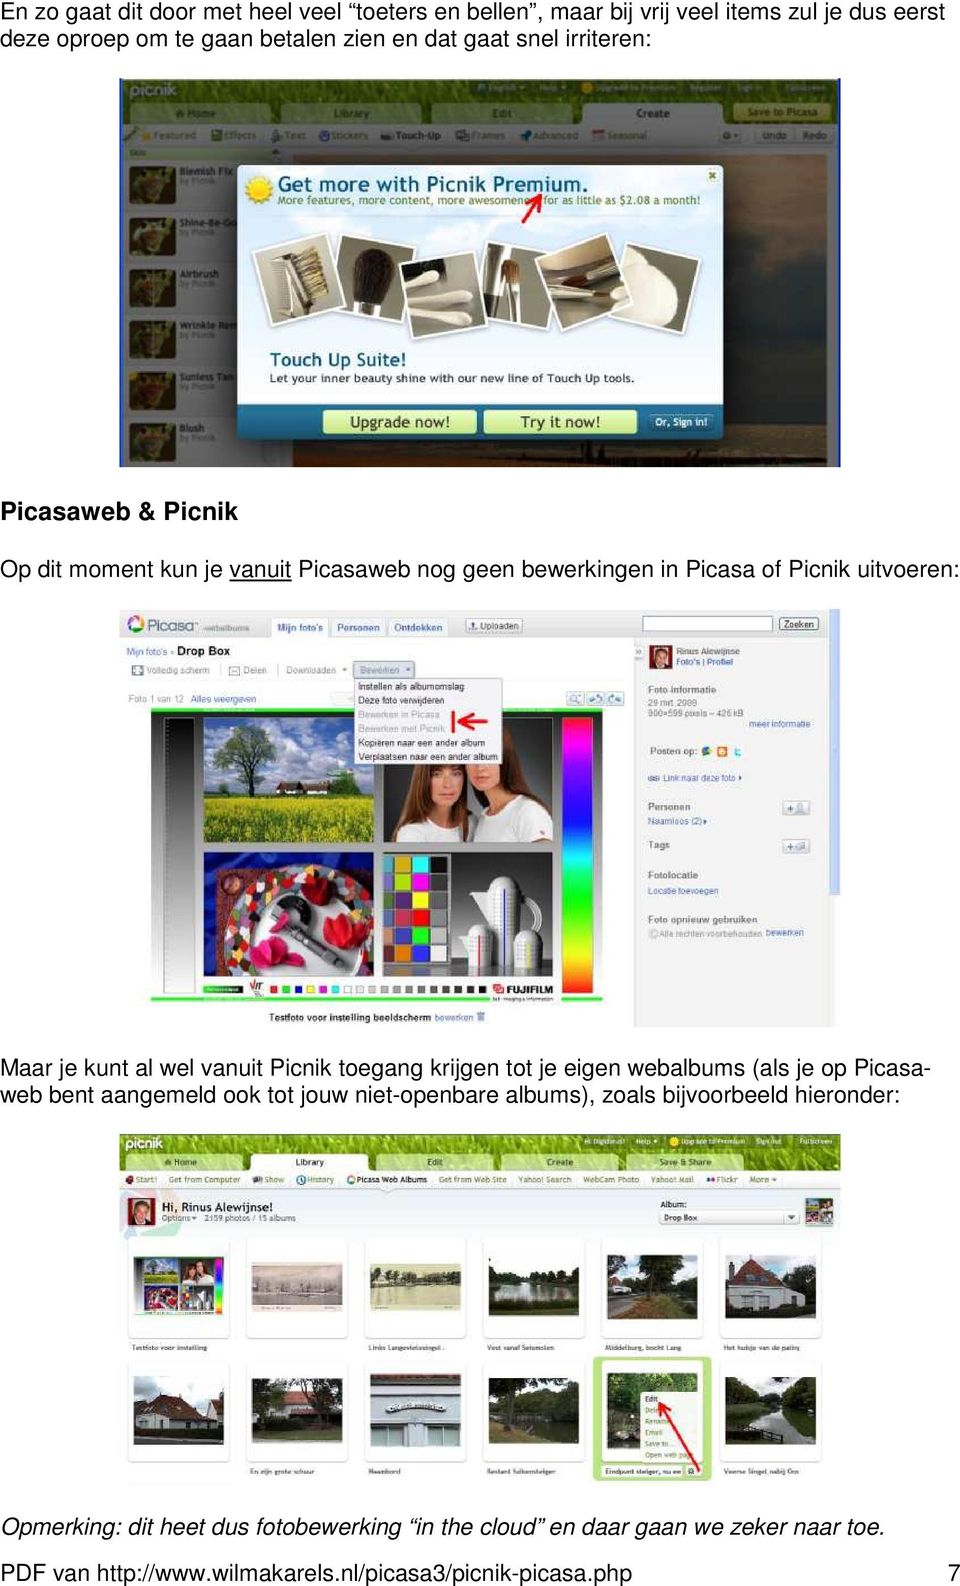 vanuit Picnik toegang krijgen tot je eigen webalbums (als je op Picasaweb bent aangemeld ook tot jouw niet-openbare albums), zoals bijvoorbeeld